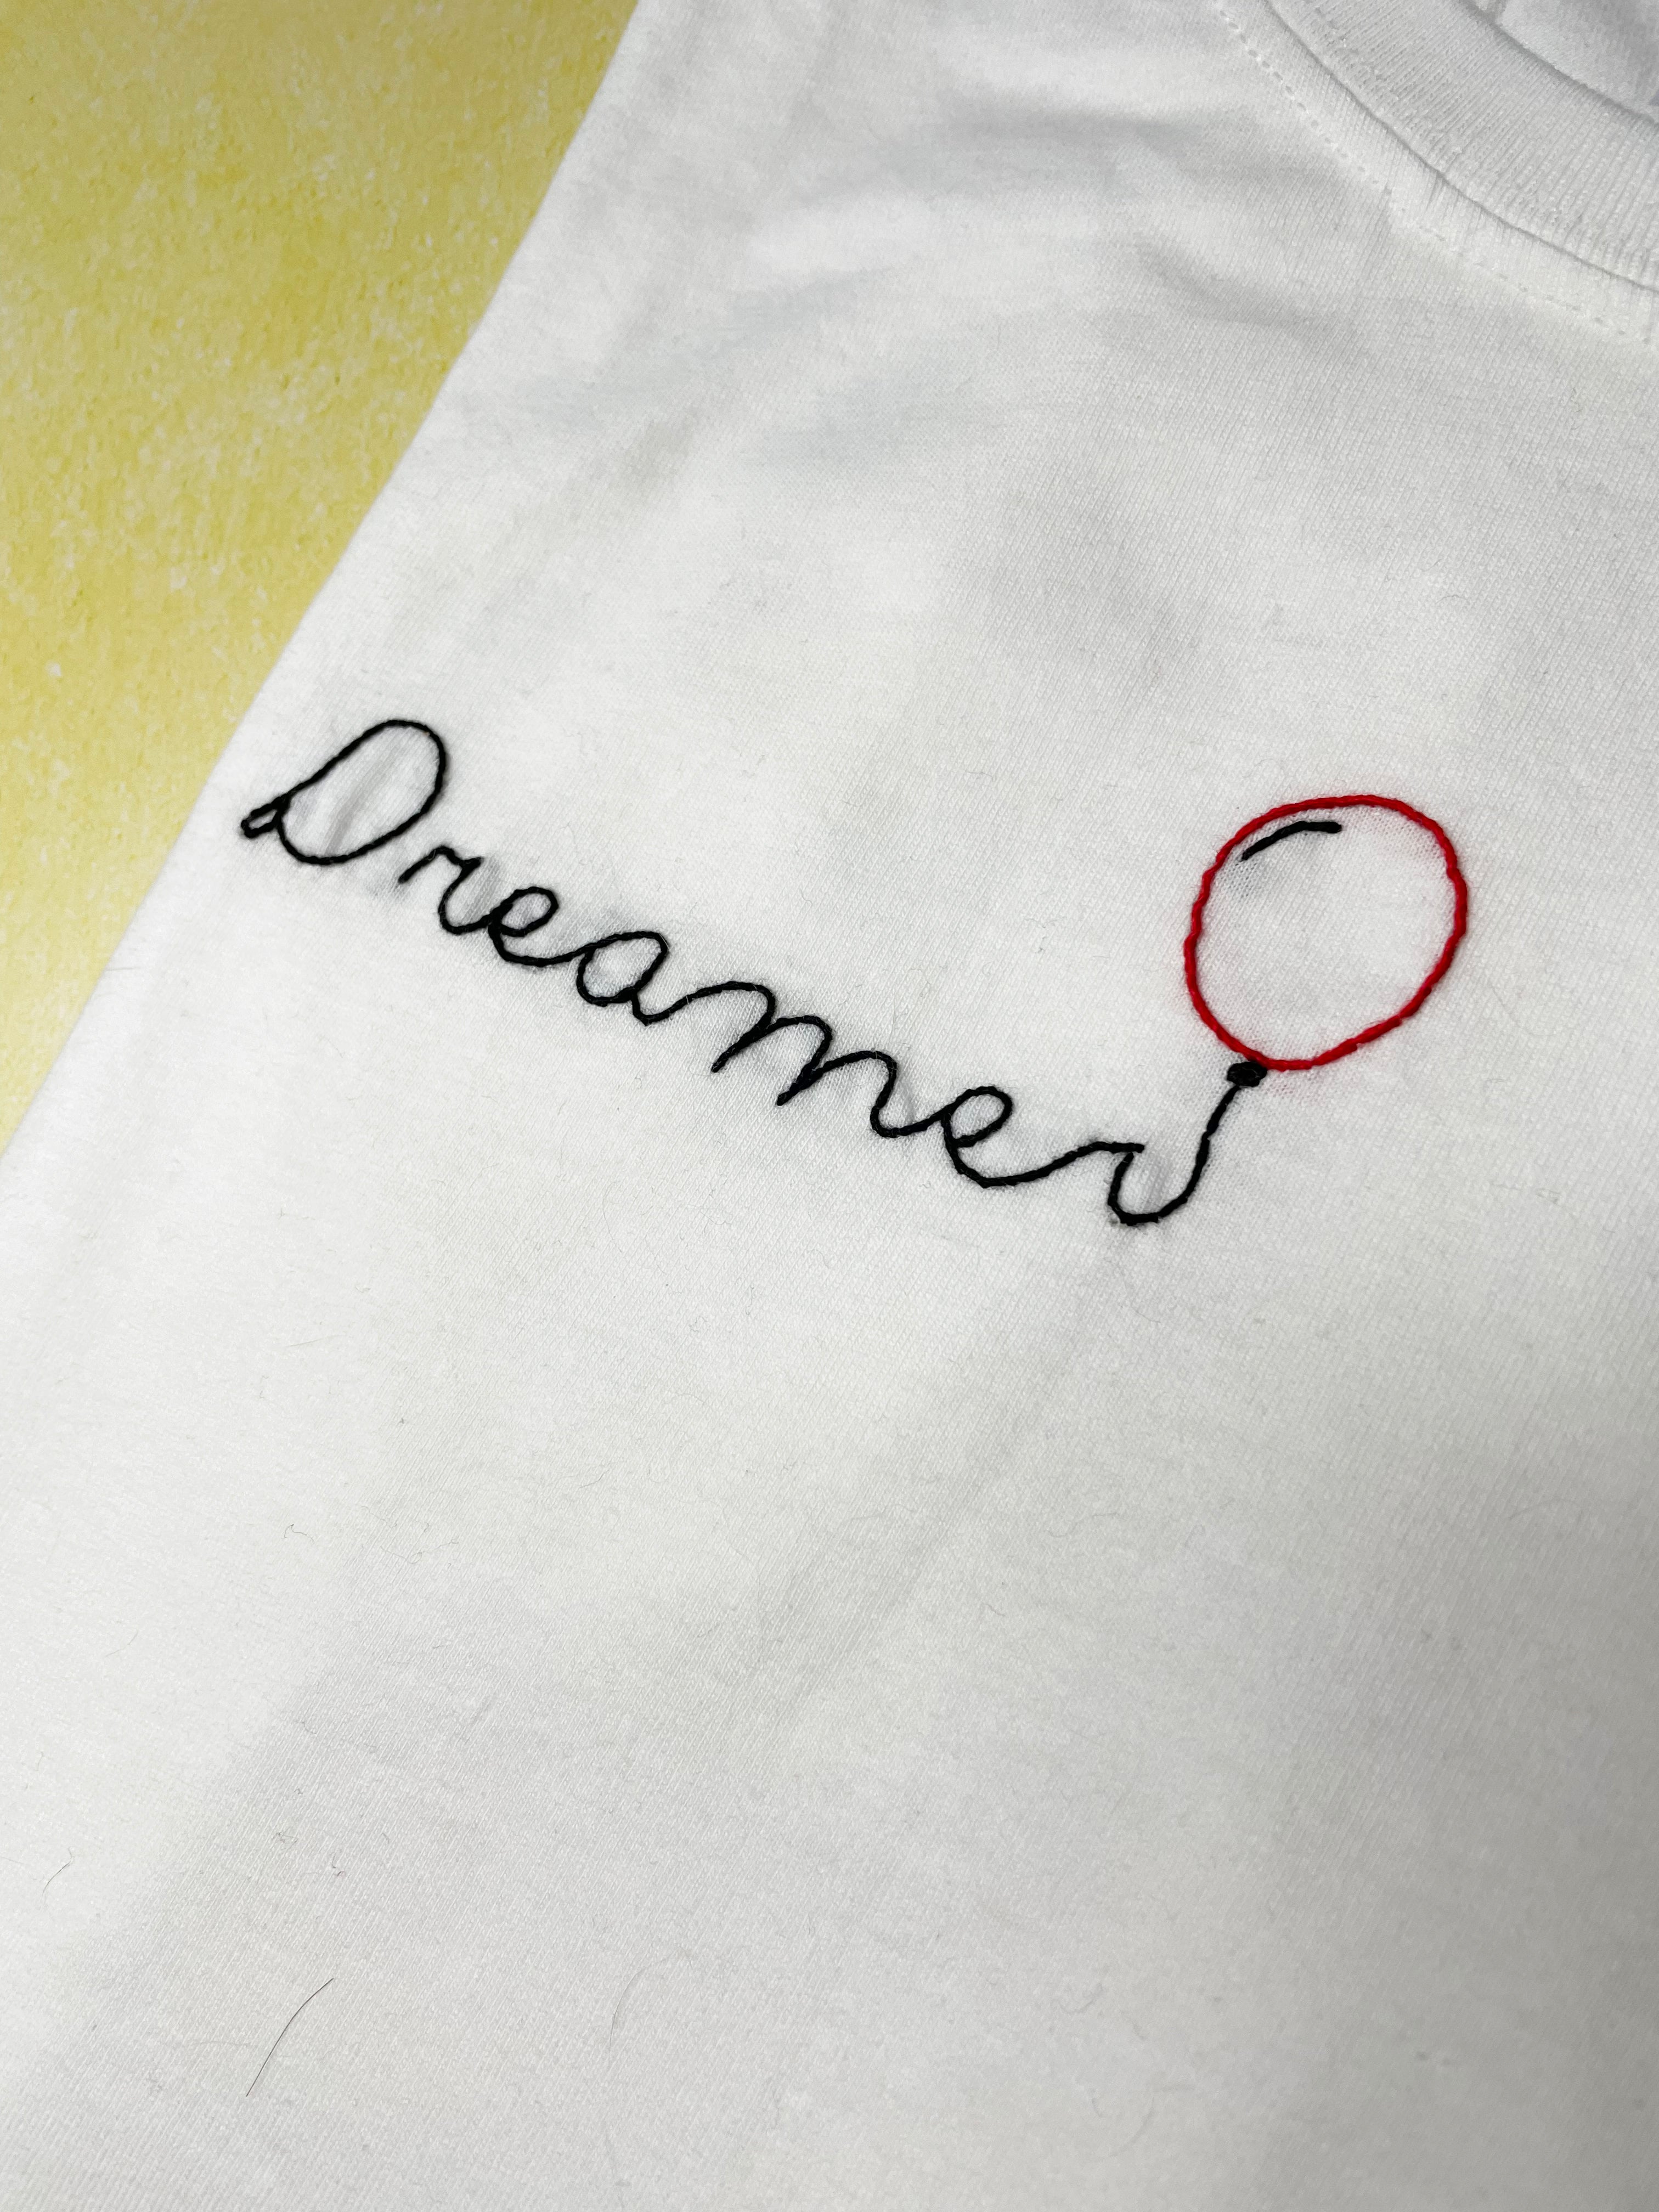 Dreamer 🎈